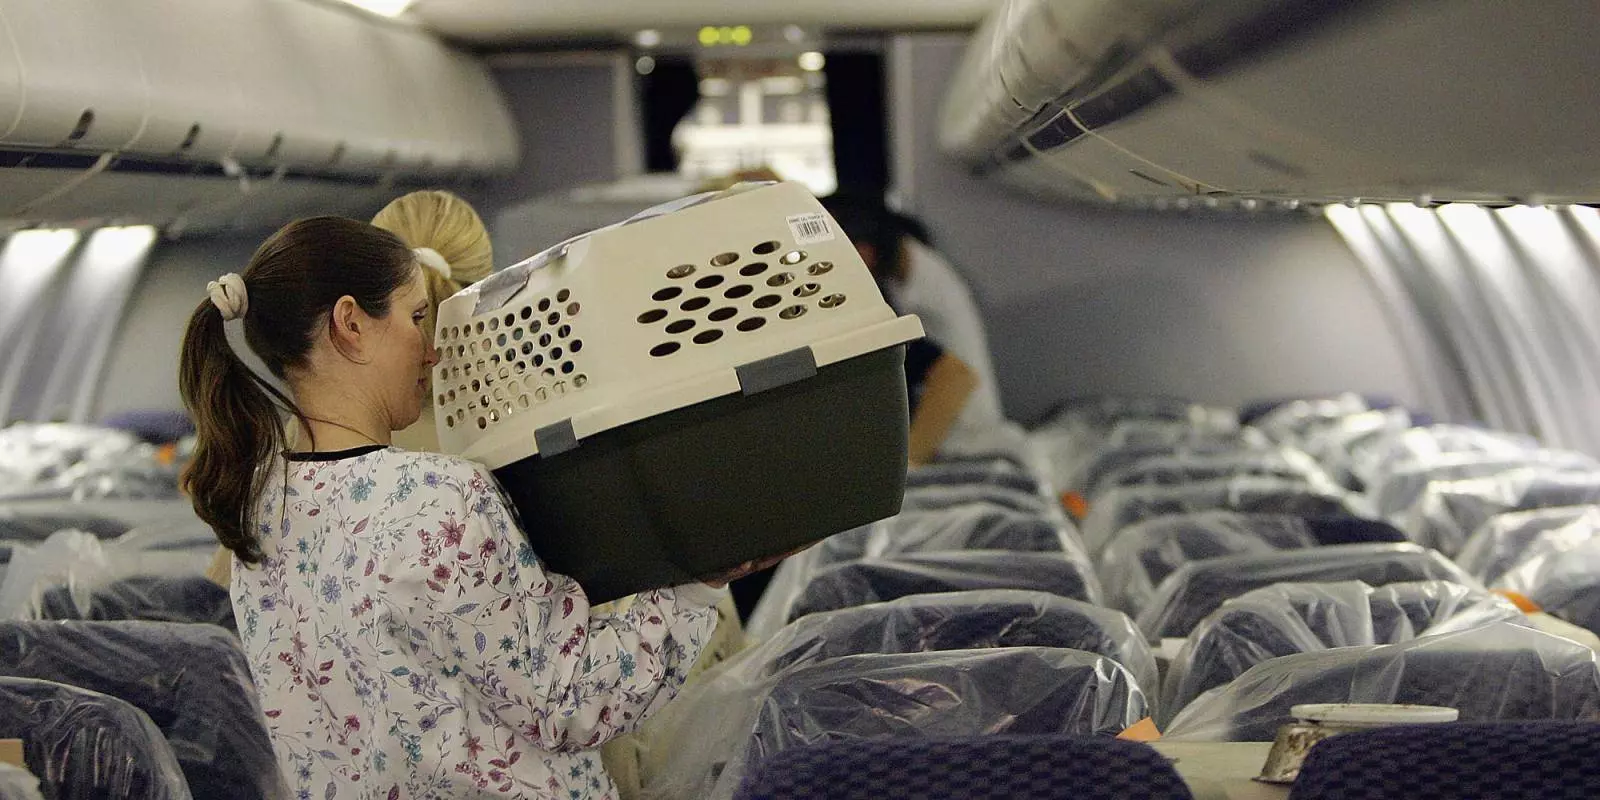 Правила перевозки кошек на самолете по россии и миру